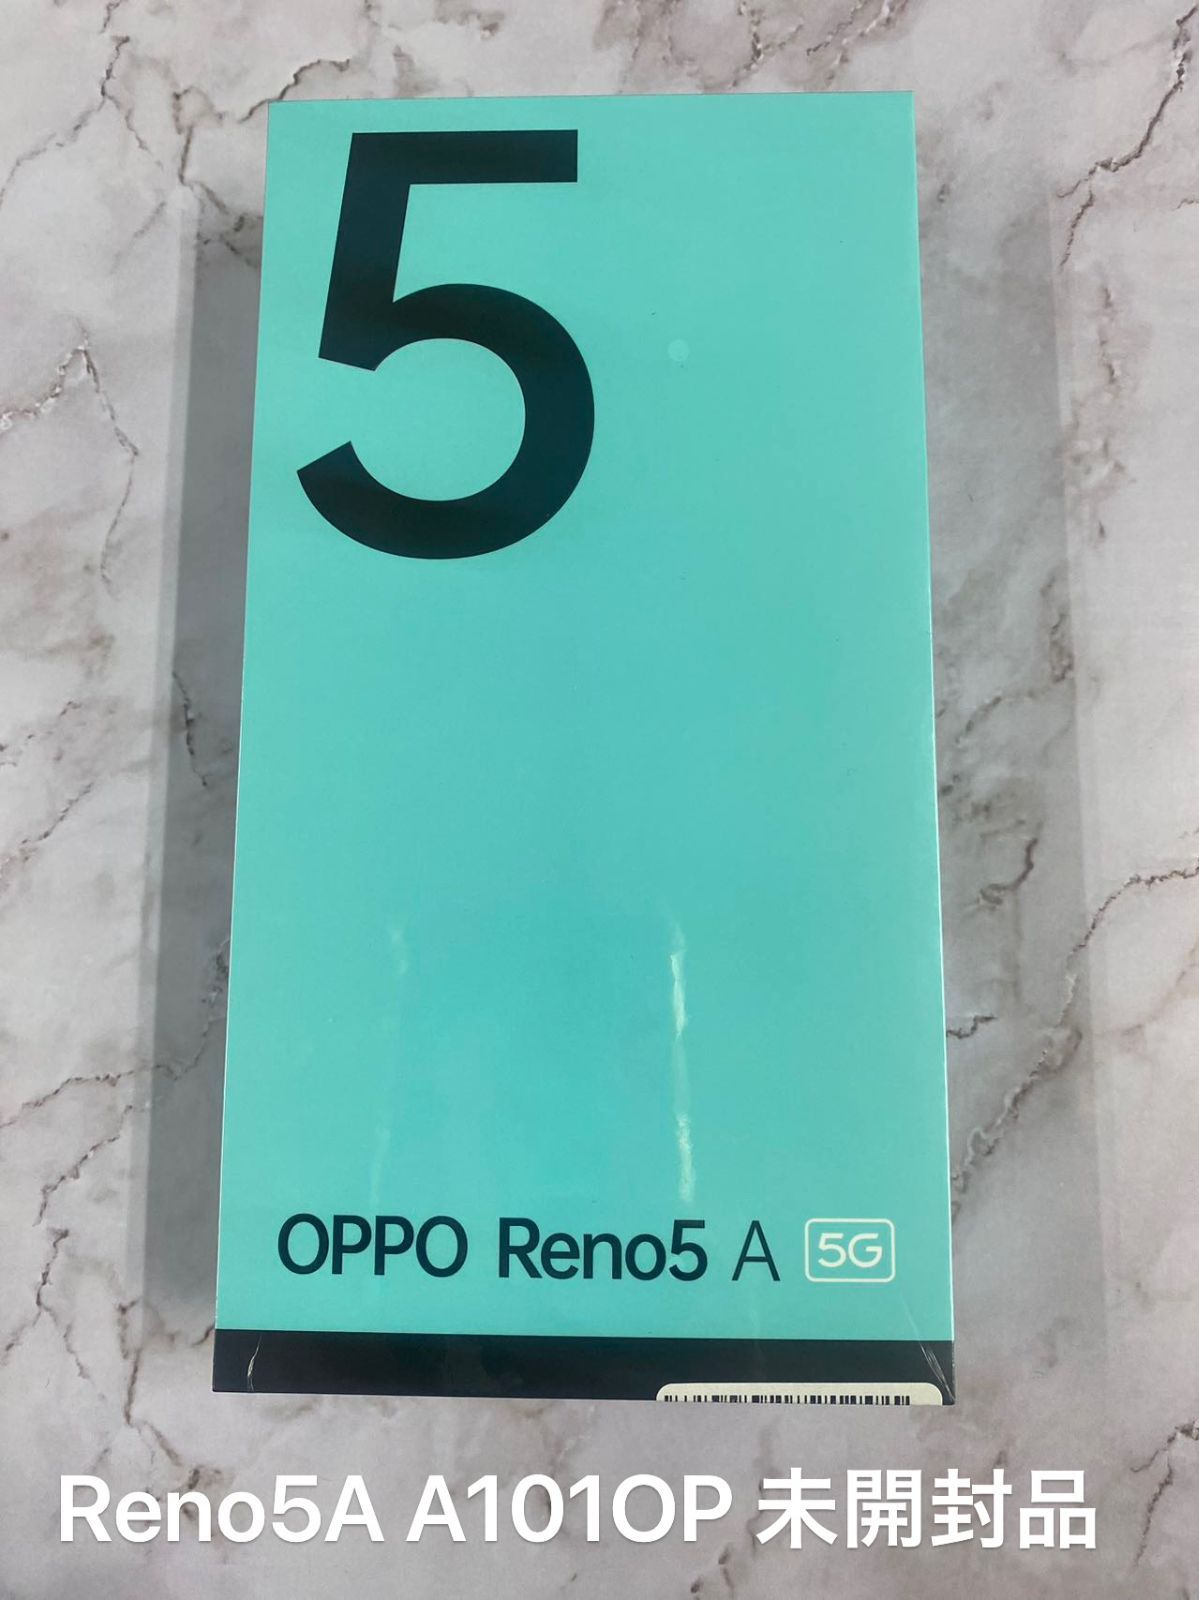 新品未開封】OPPO Reno5A シルバーブラック ワイモバイル版 - メルカリ